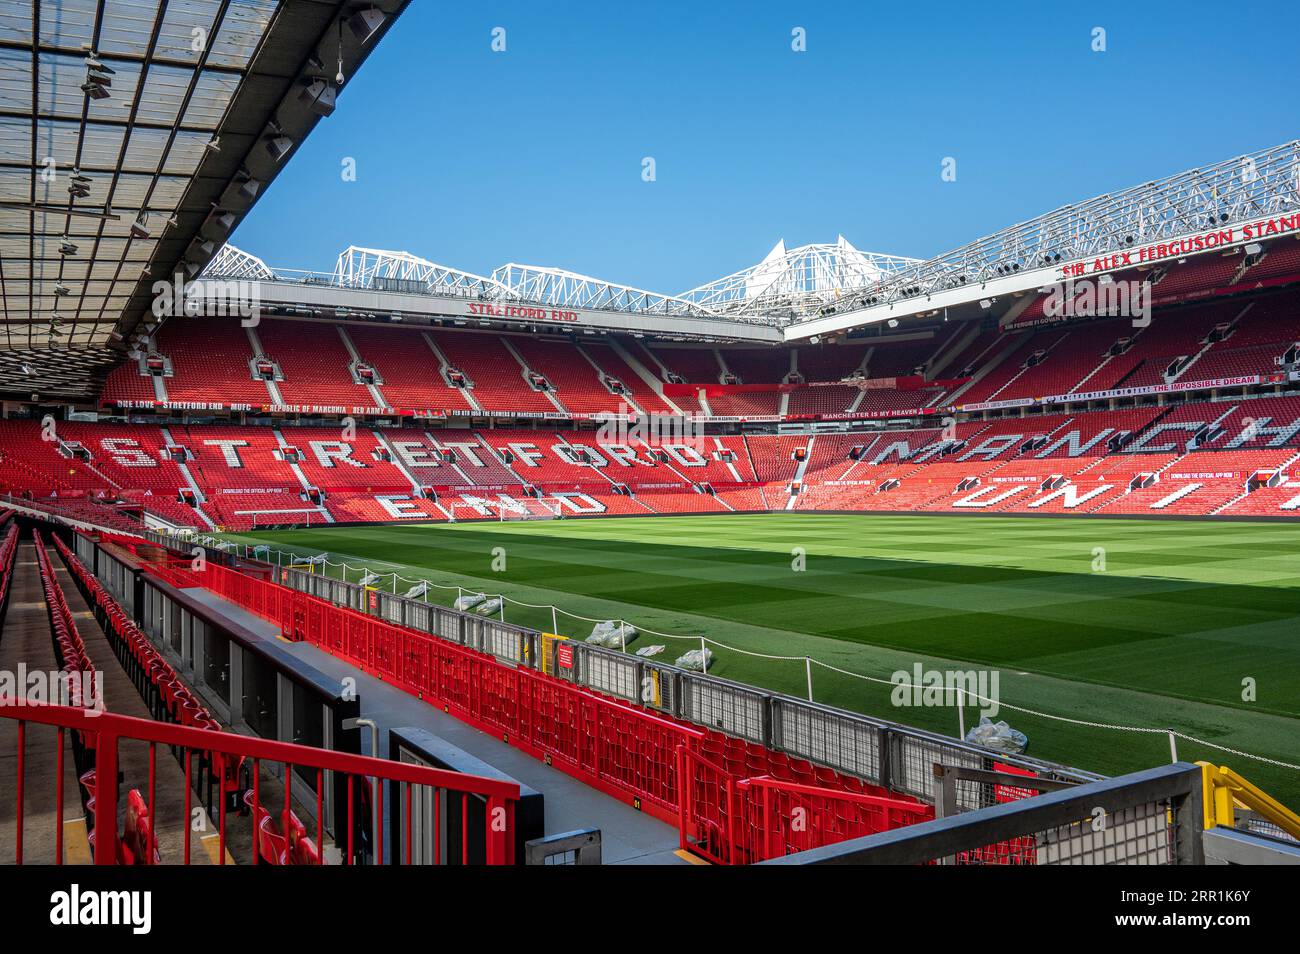 Stadiontour im Old Trafford Stadion von Manchester United in Manchester, Großbritannien Stockfoto